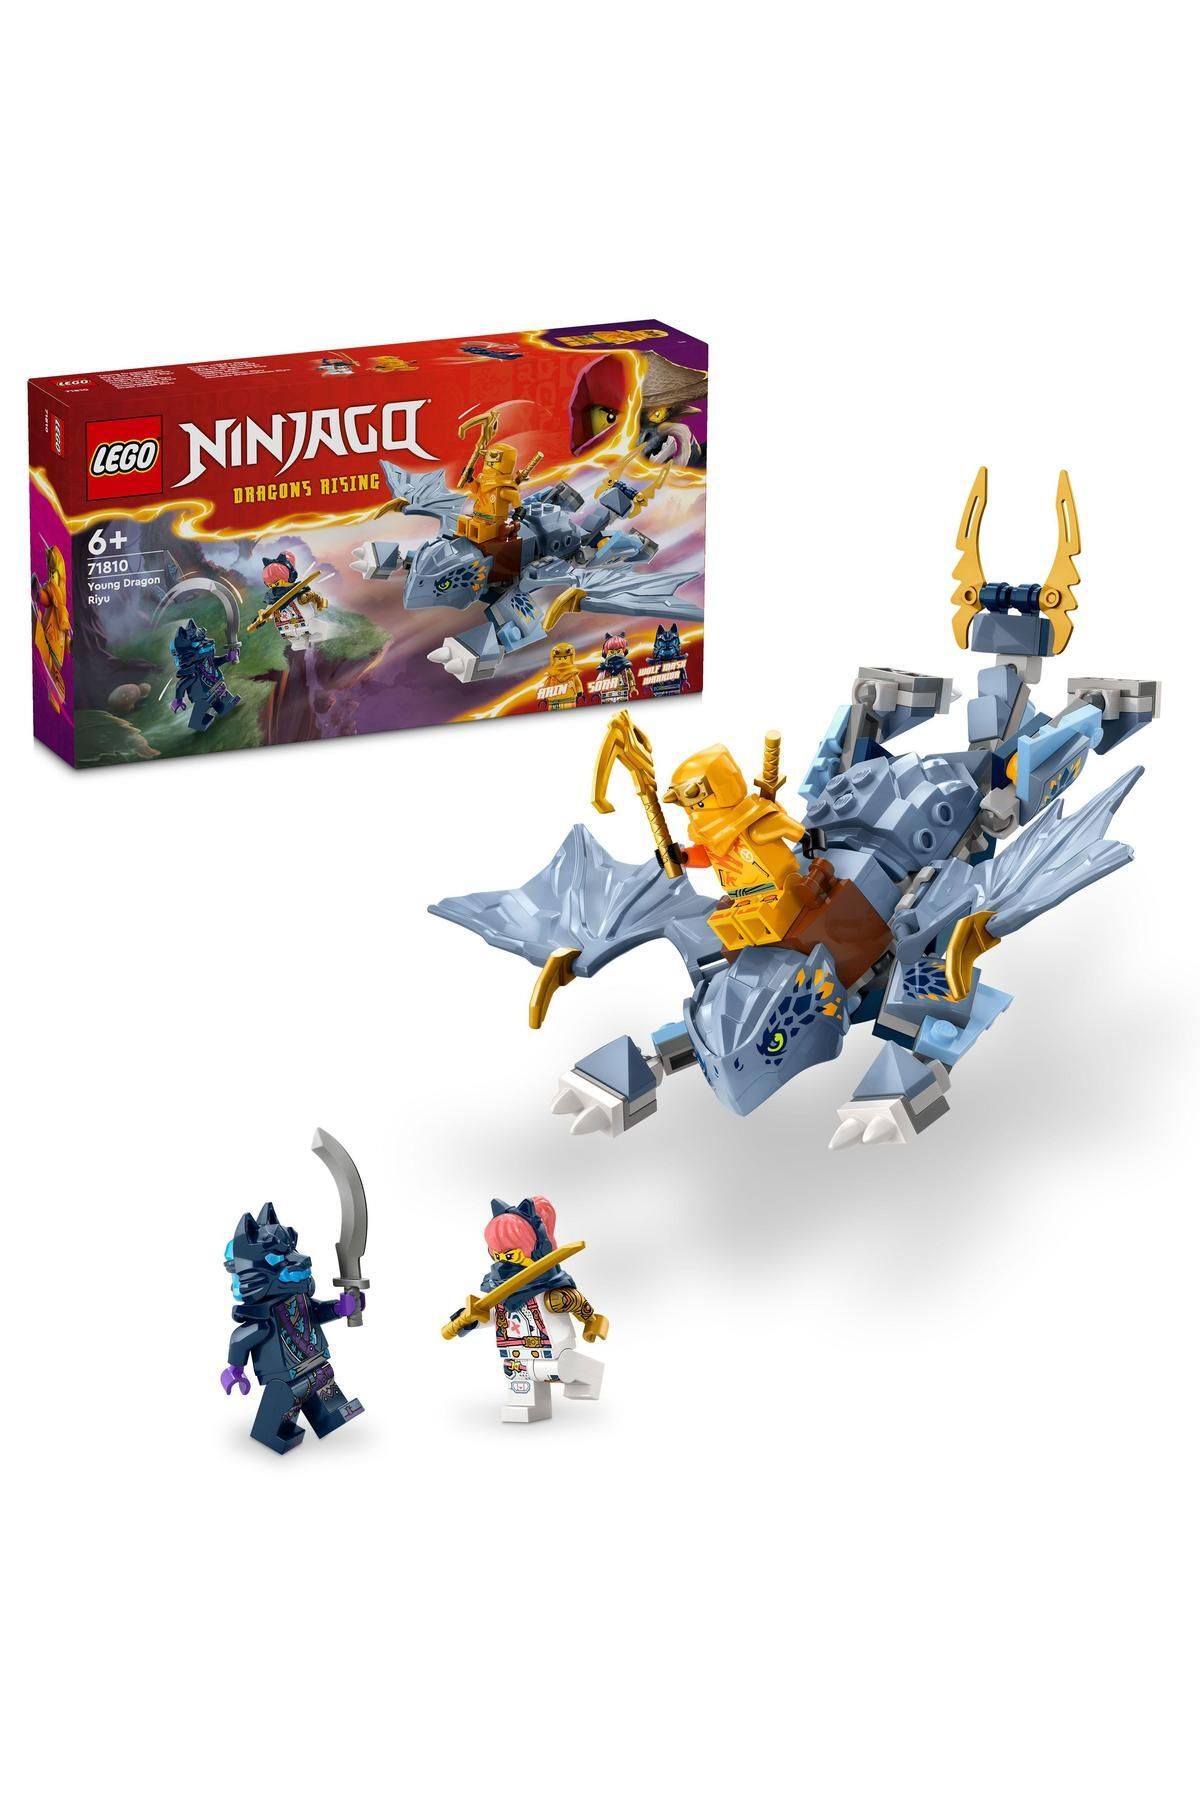 LEGO ® NINJAGO® Genç Ejderha Riyu 71810 - 6 Yaş ve Üzeri İçin Yapım Seti (132 Parça)